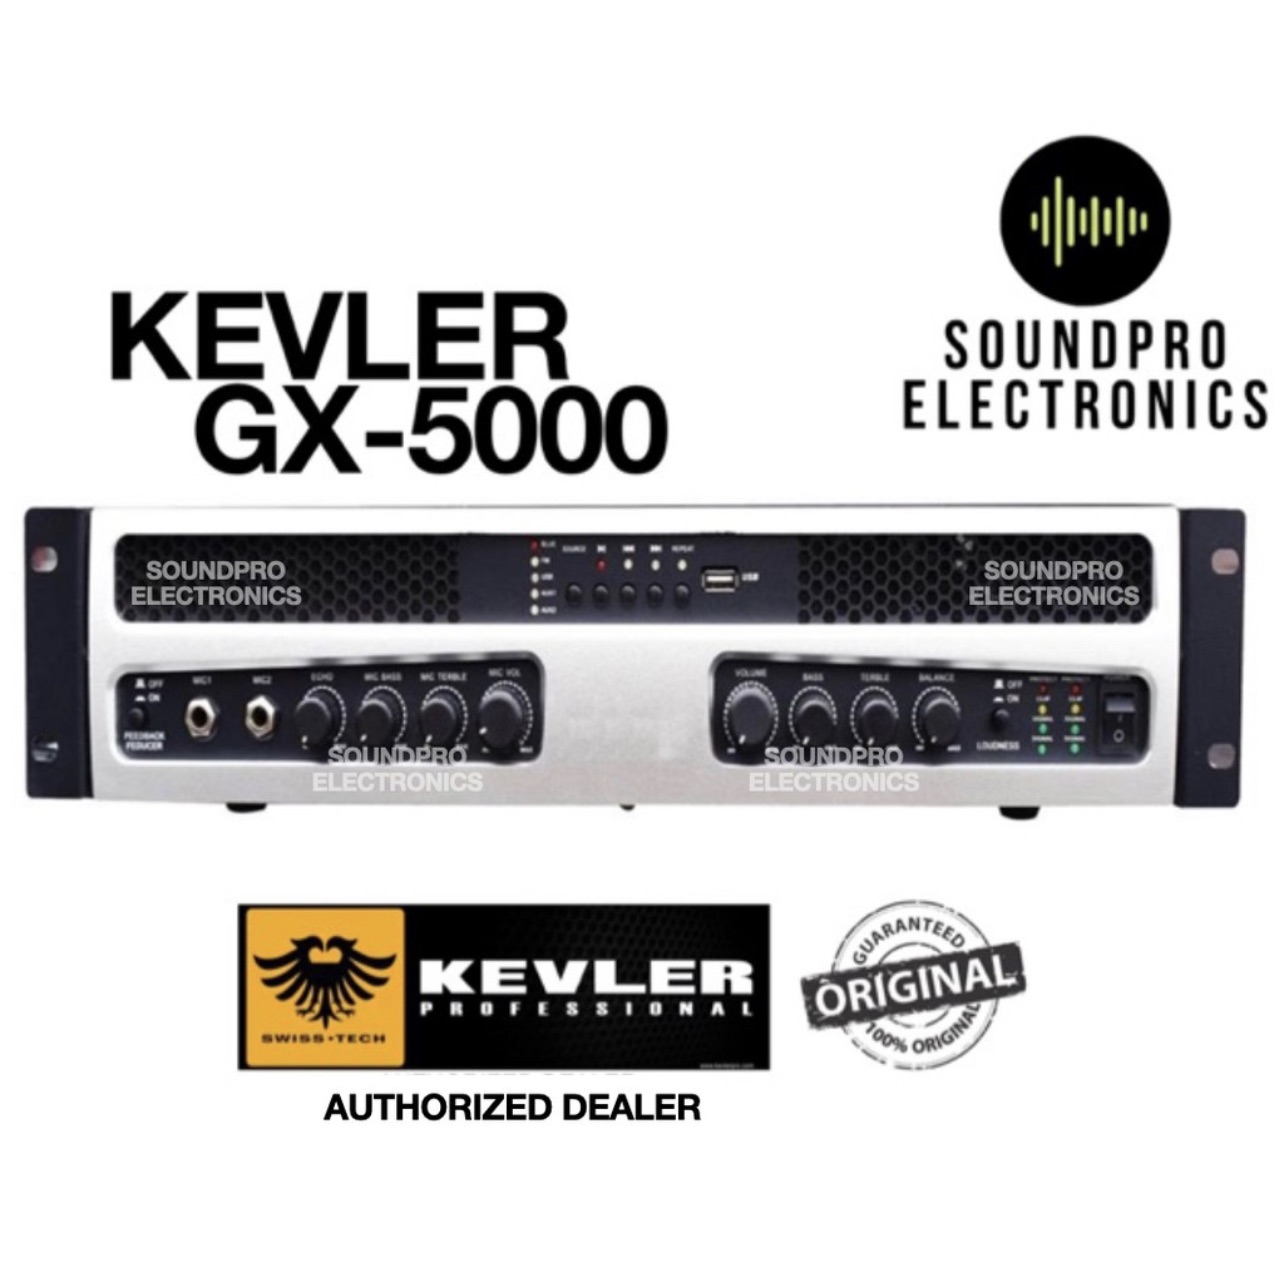 Kevler GX-5000 Professional Karaoke Power Amplifier 1000W